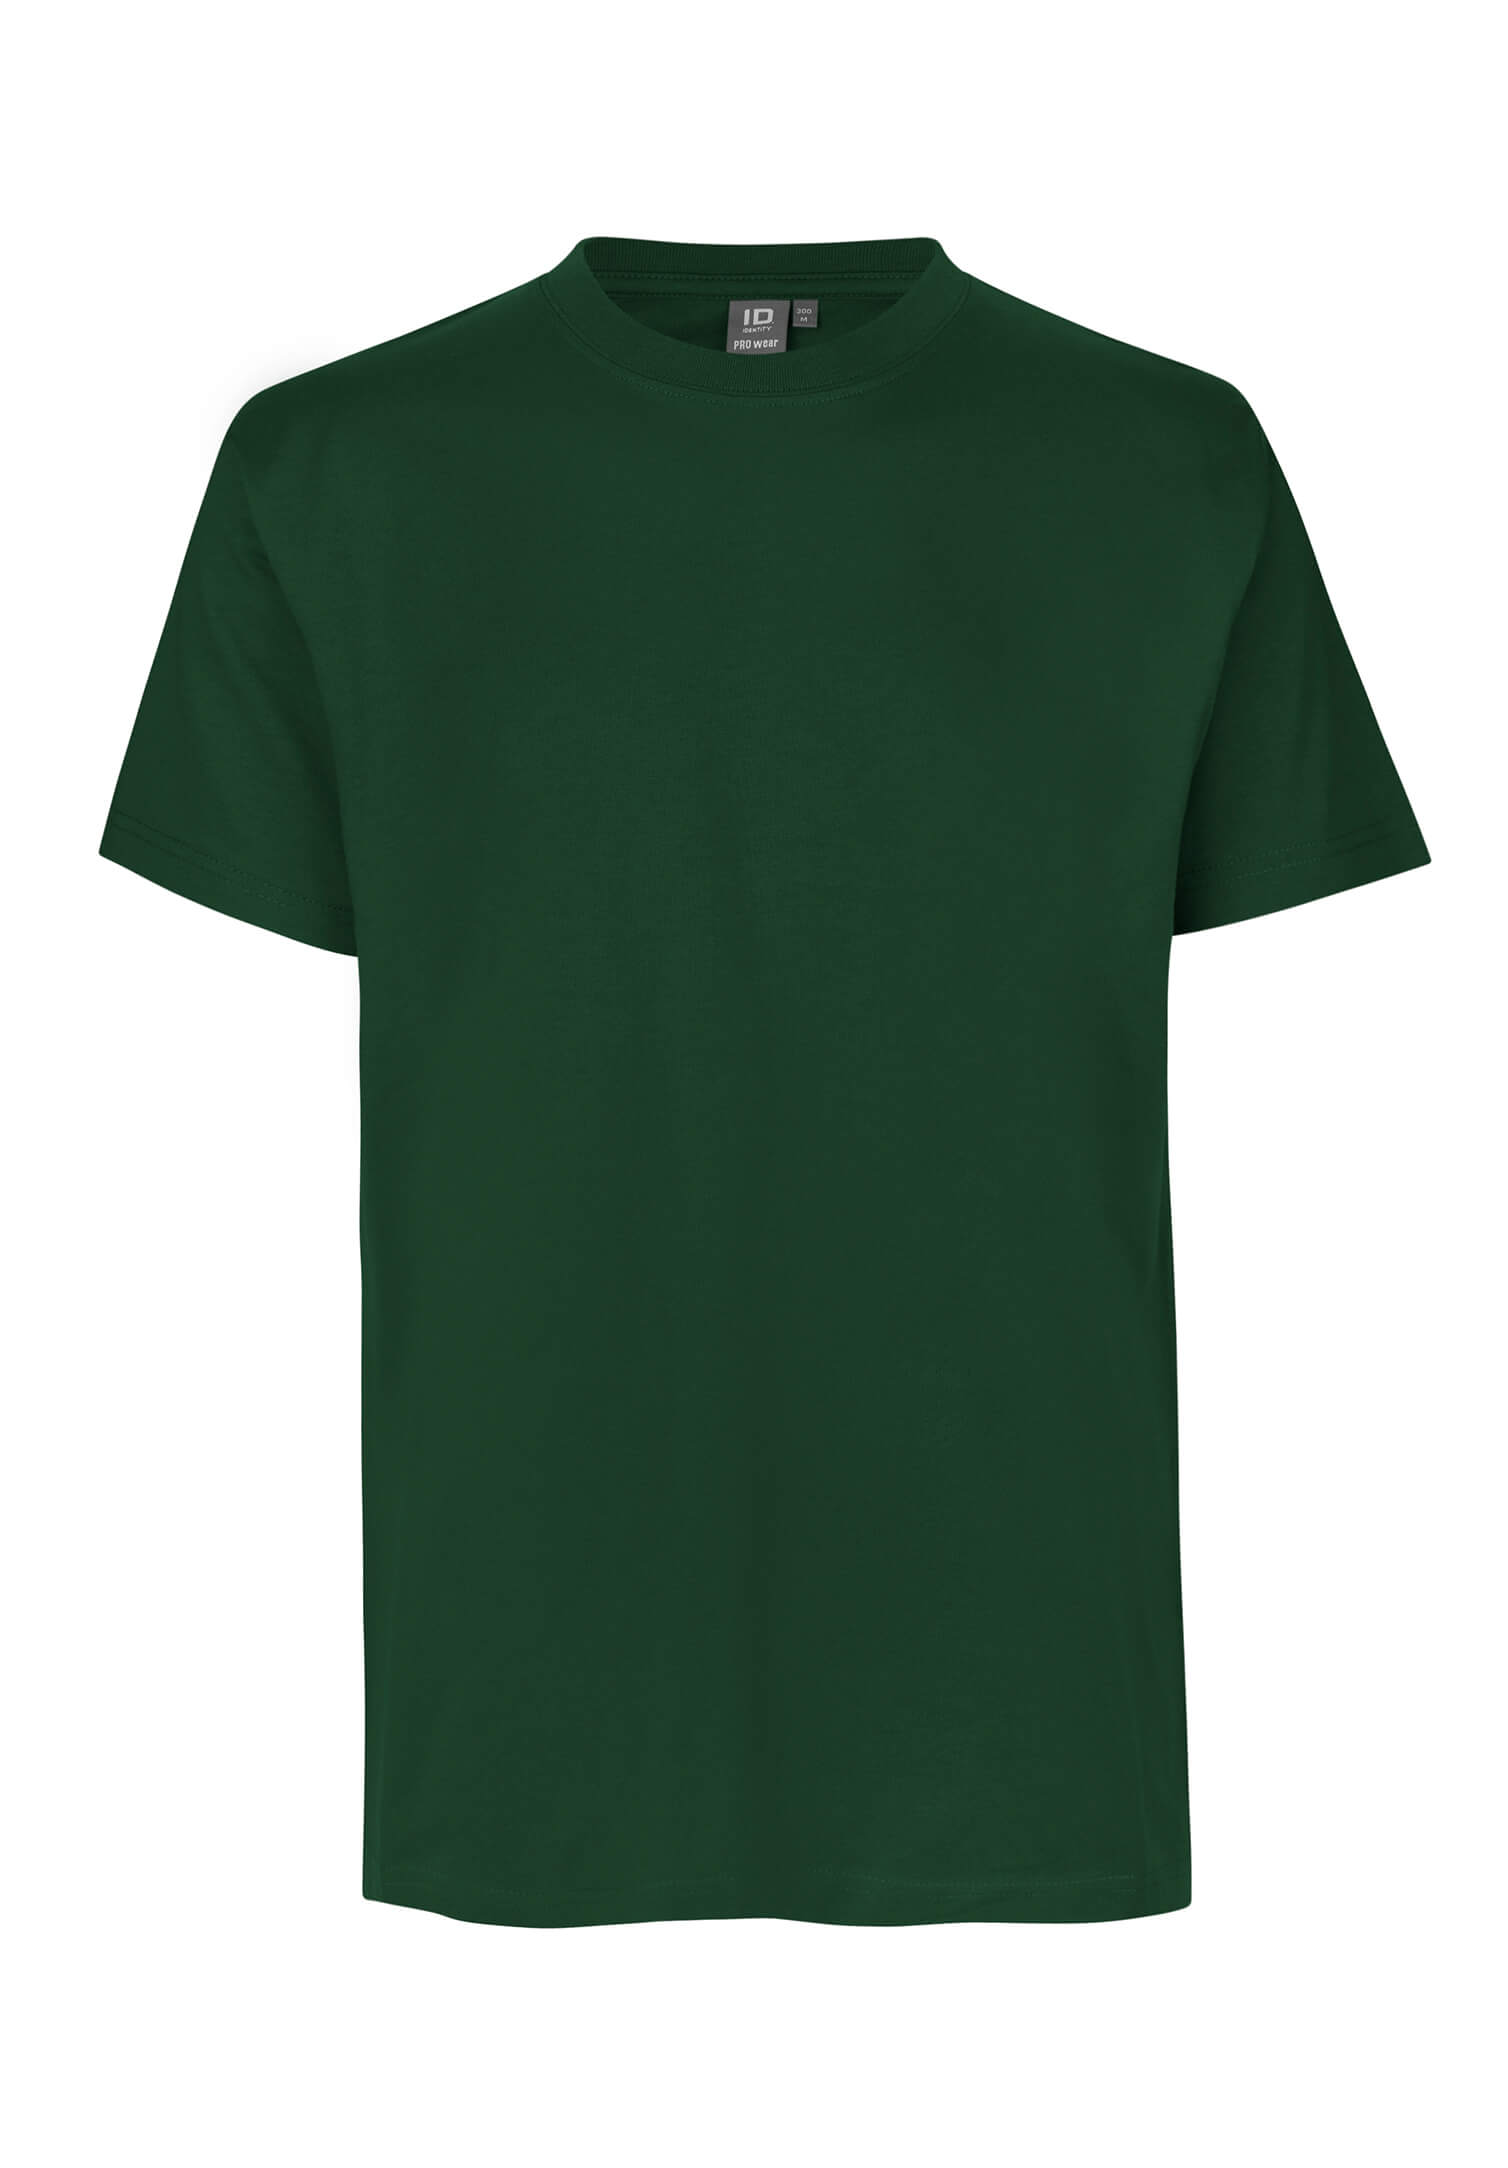 Bestatter T-Shirt - dunkelgrün - XL